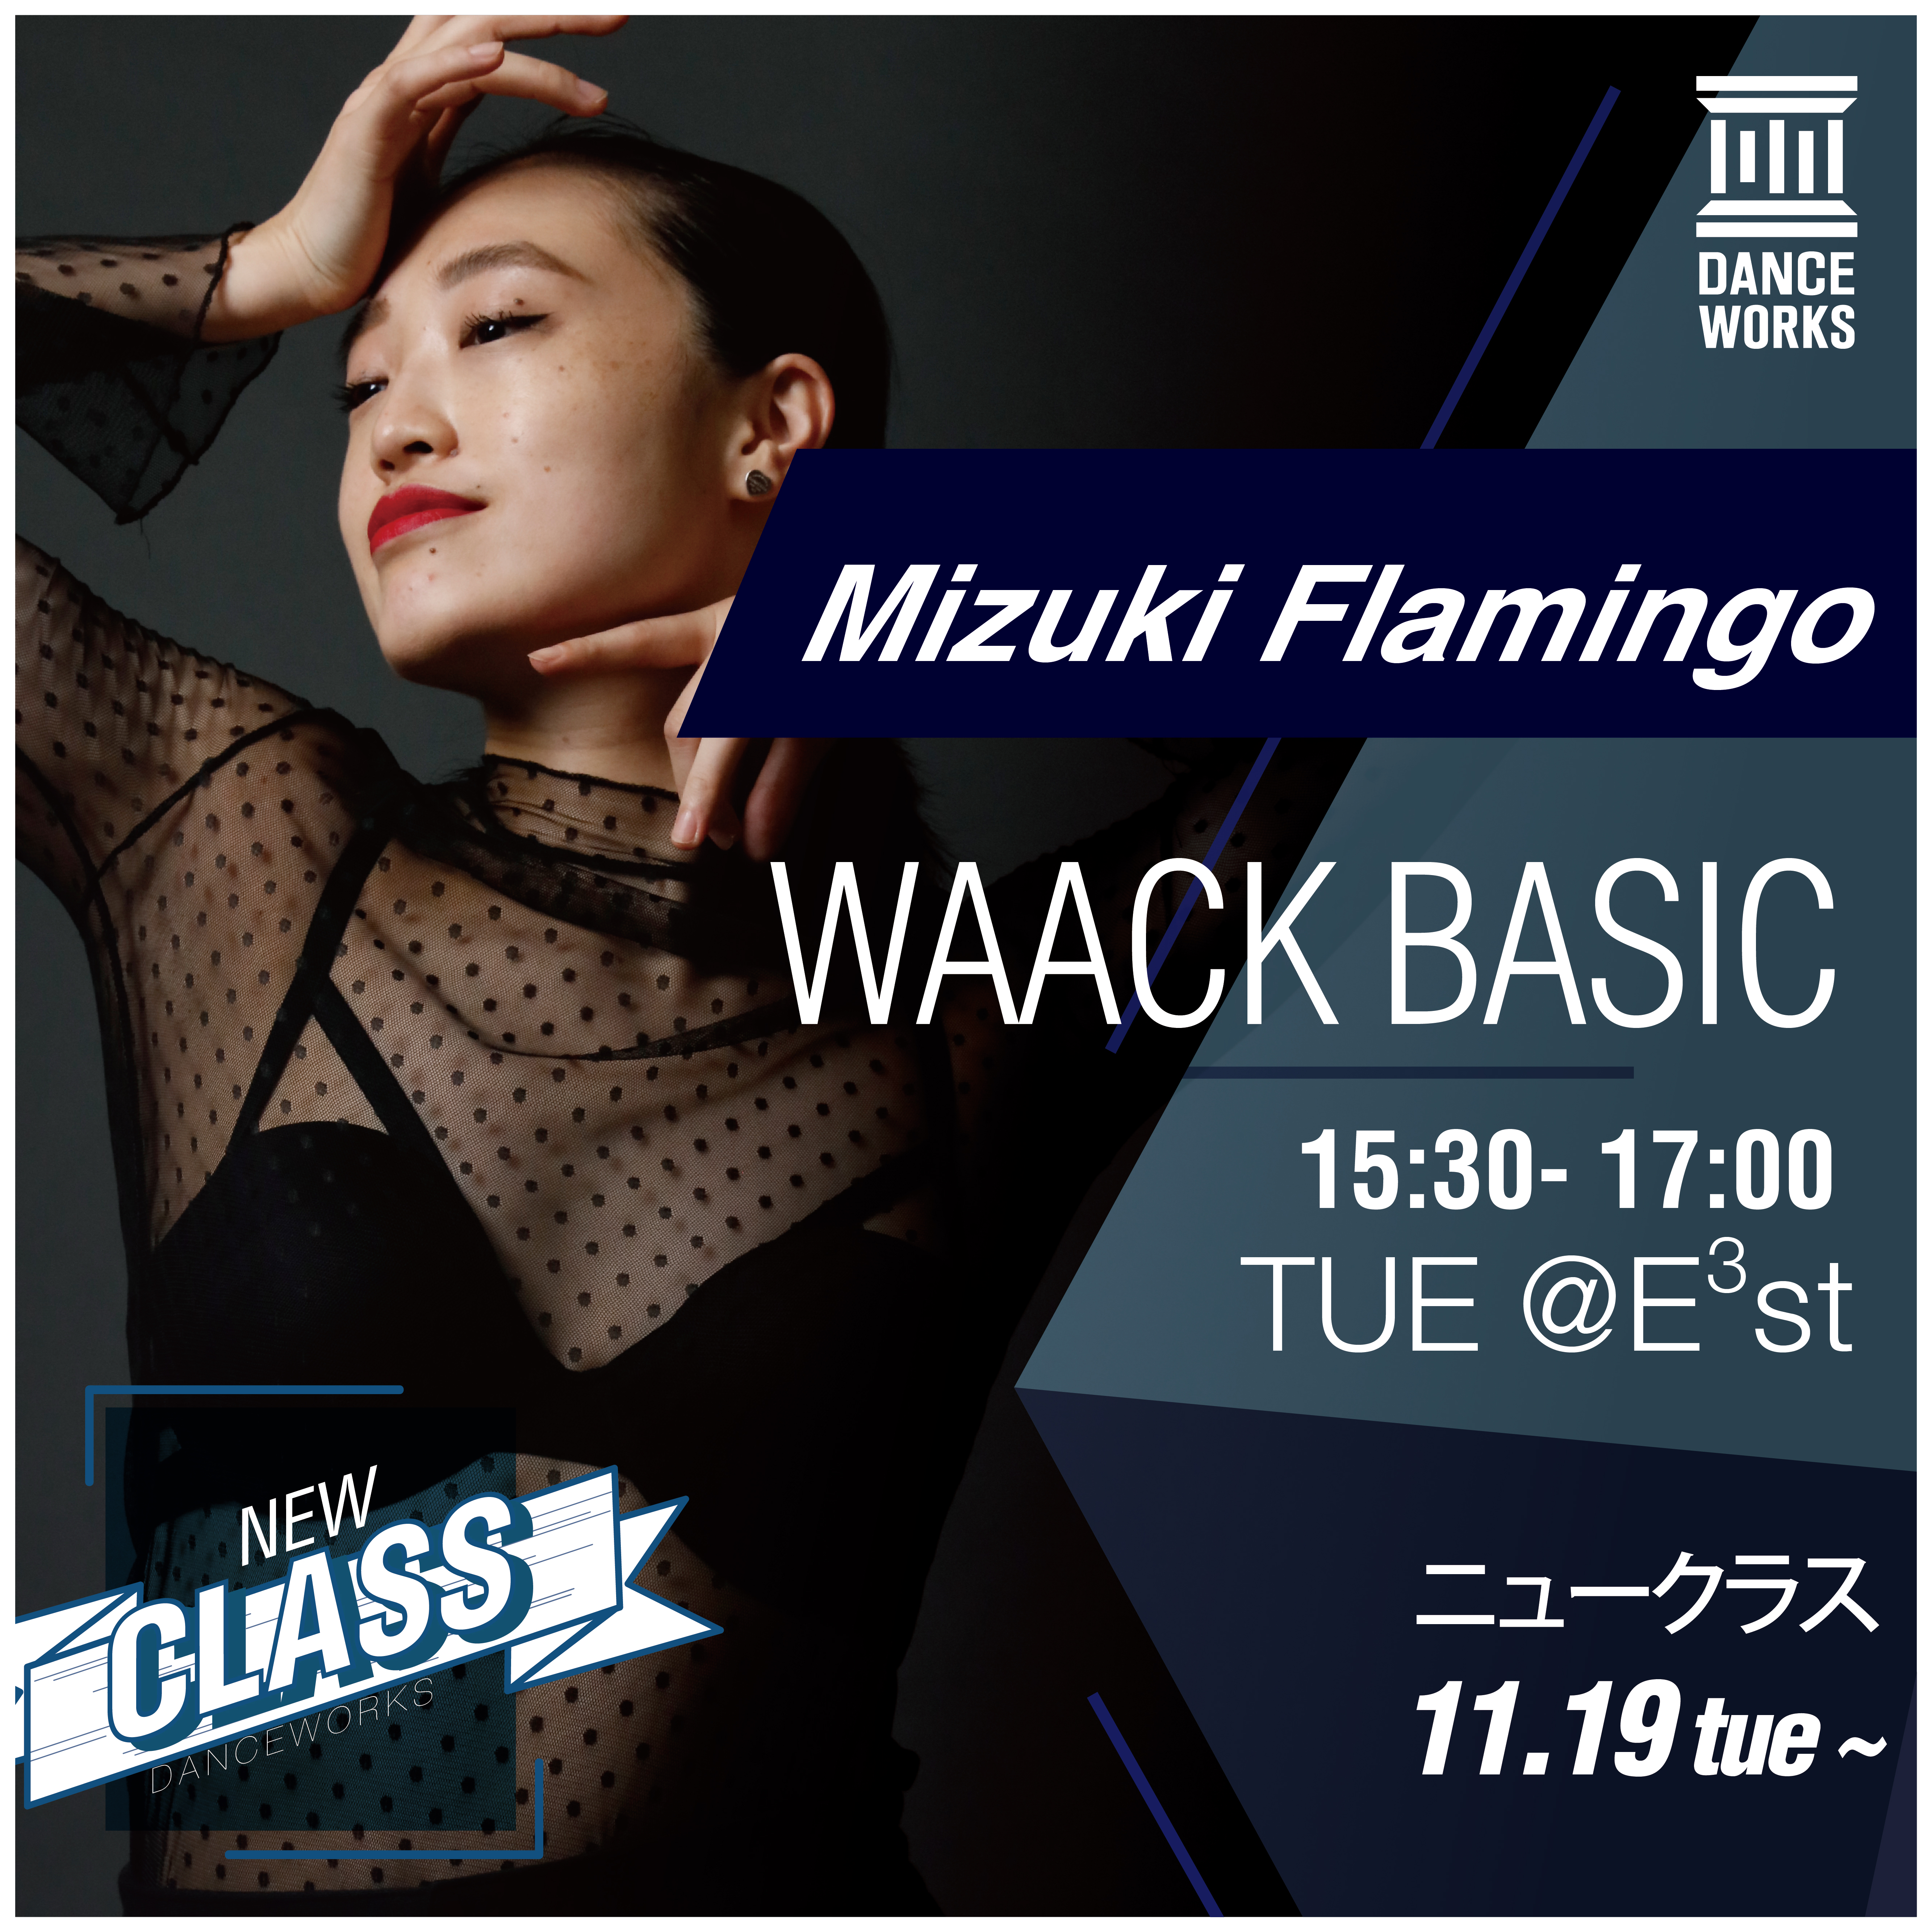 記事「Dance Works、Mizuki Flamingo氏による「WAACK BASIC」クラスを開講」の画像